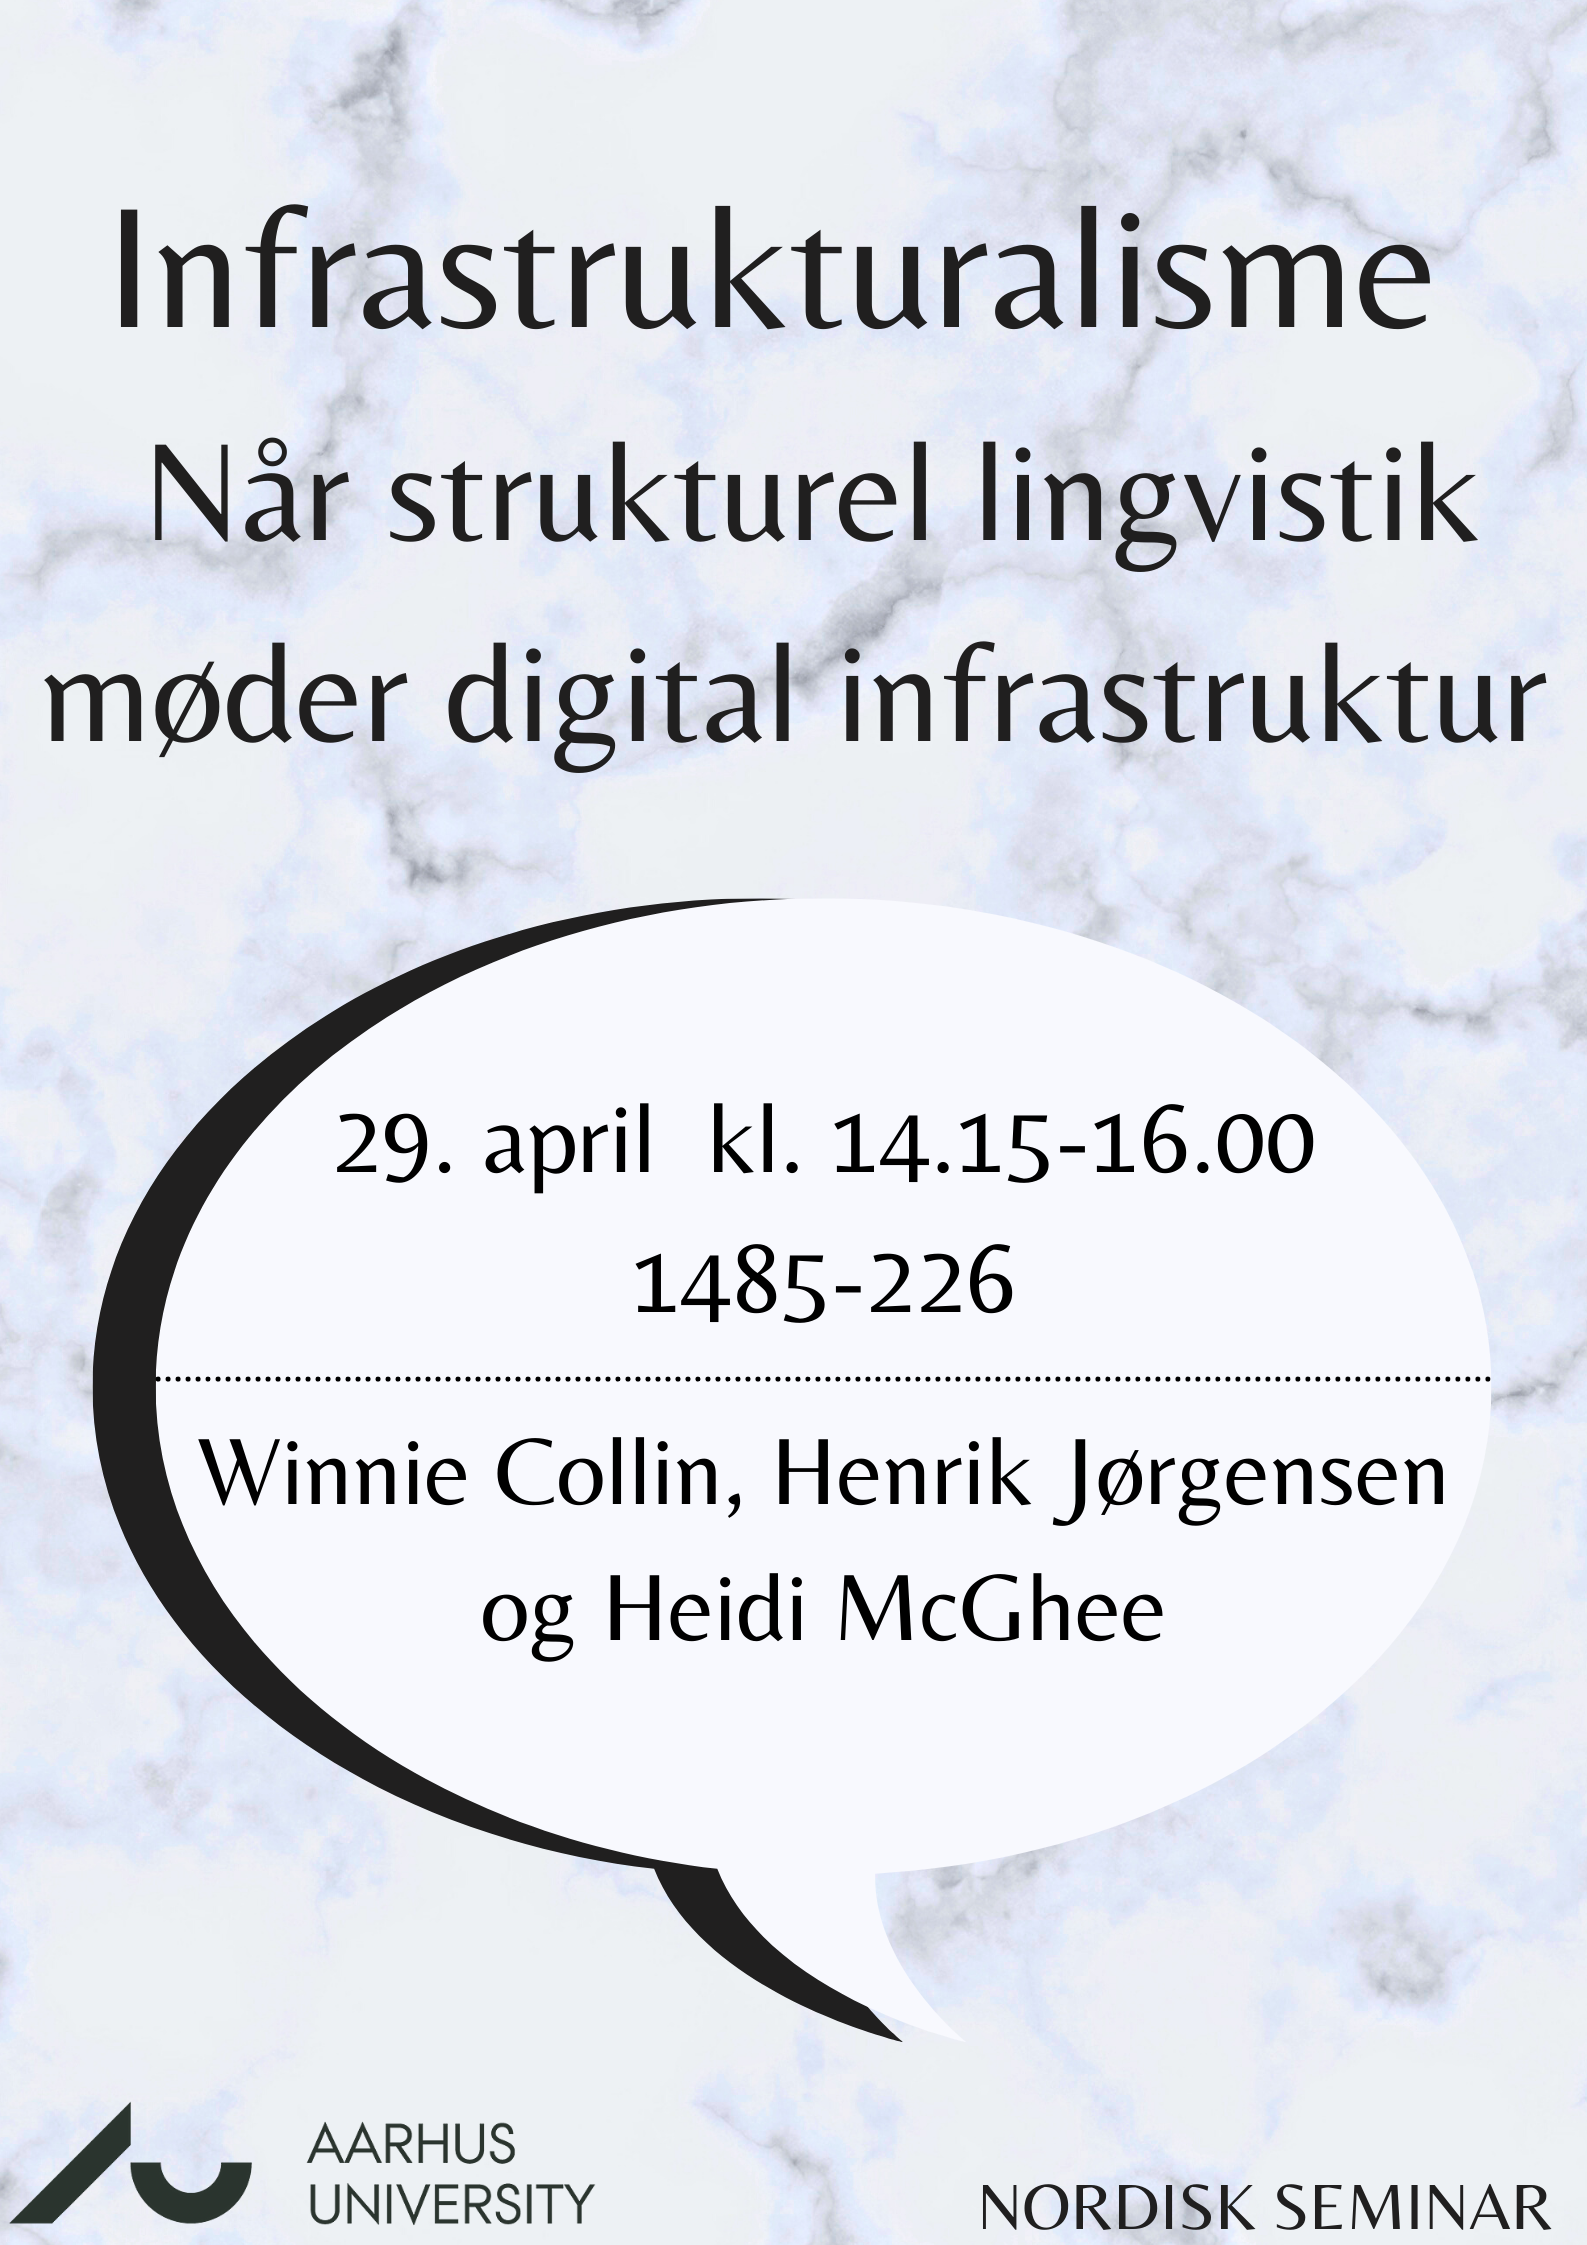 Nordisk Seminar: Infrastrukturalisme - når strukturel lingvistik møder digital infrastruktur. Den 29. april, kl. 14.00-16.00. Lokale 1485-226.